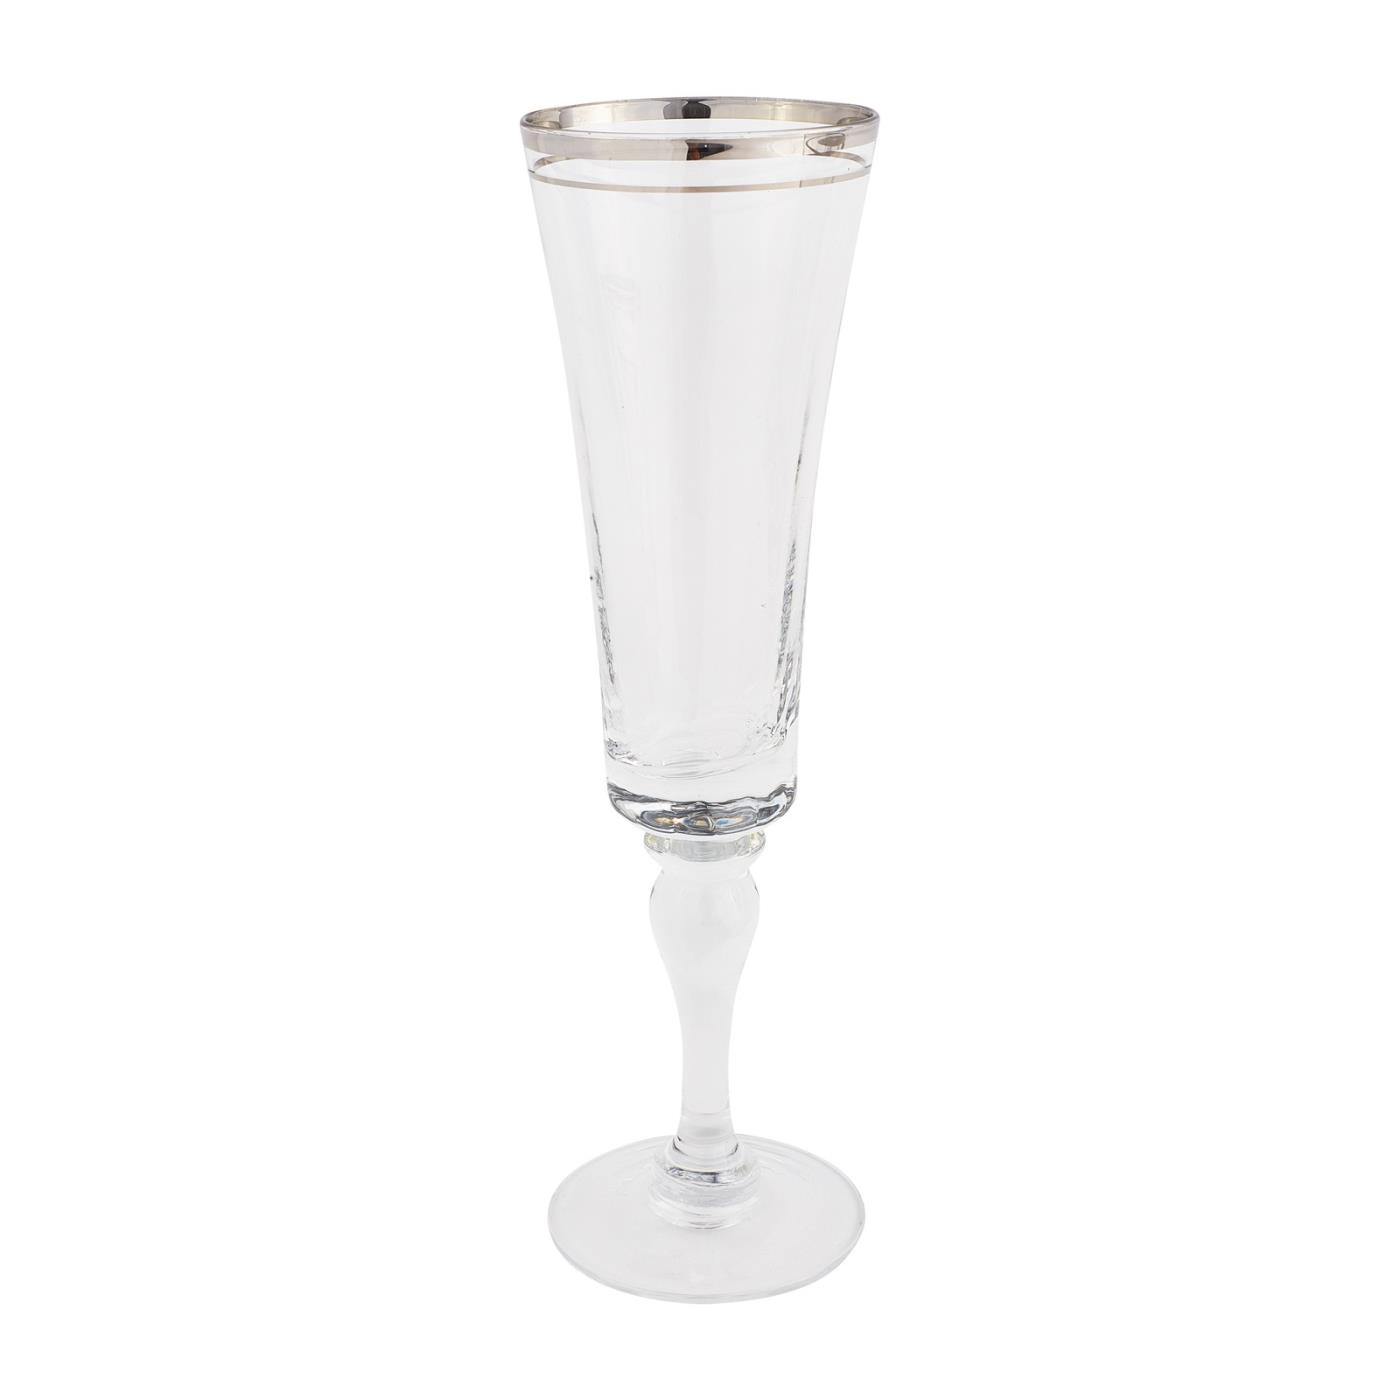 Allure Silver Collection -  Champagne Flute 7 oz